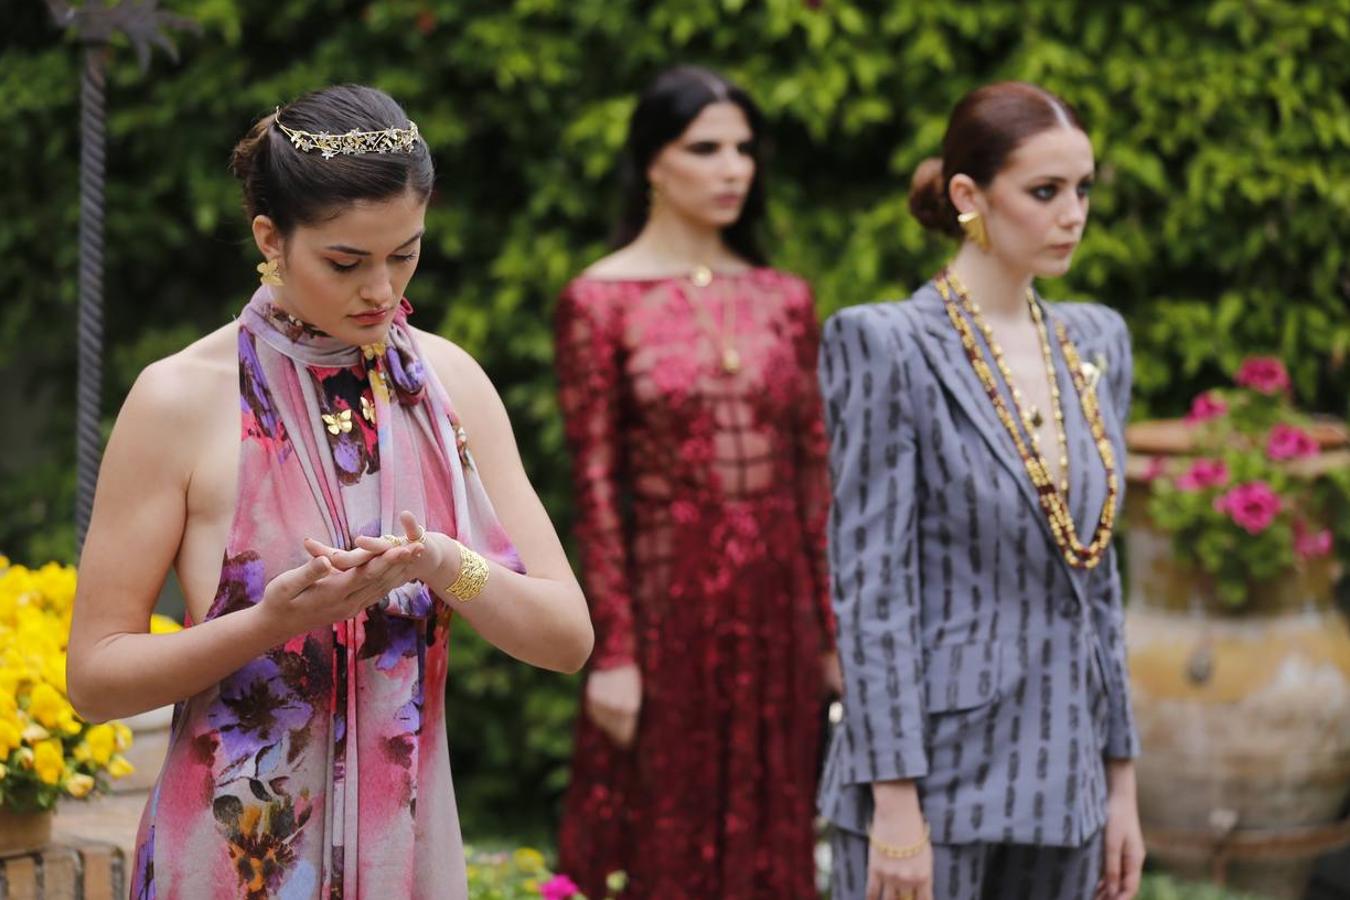 La moda y la joyería cordobesa se exhiben en el Palacio de Viana